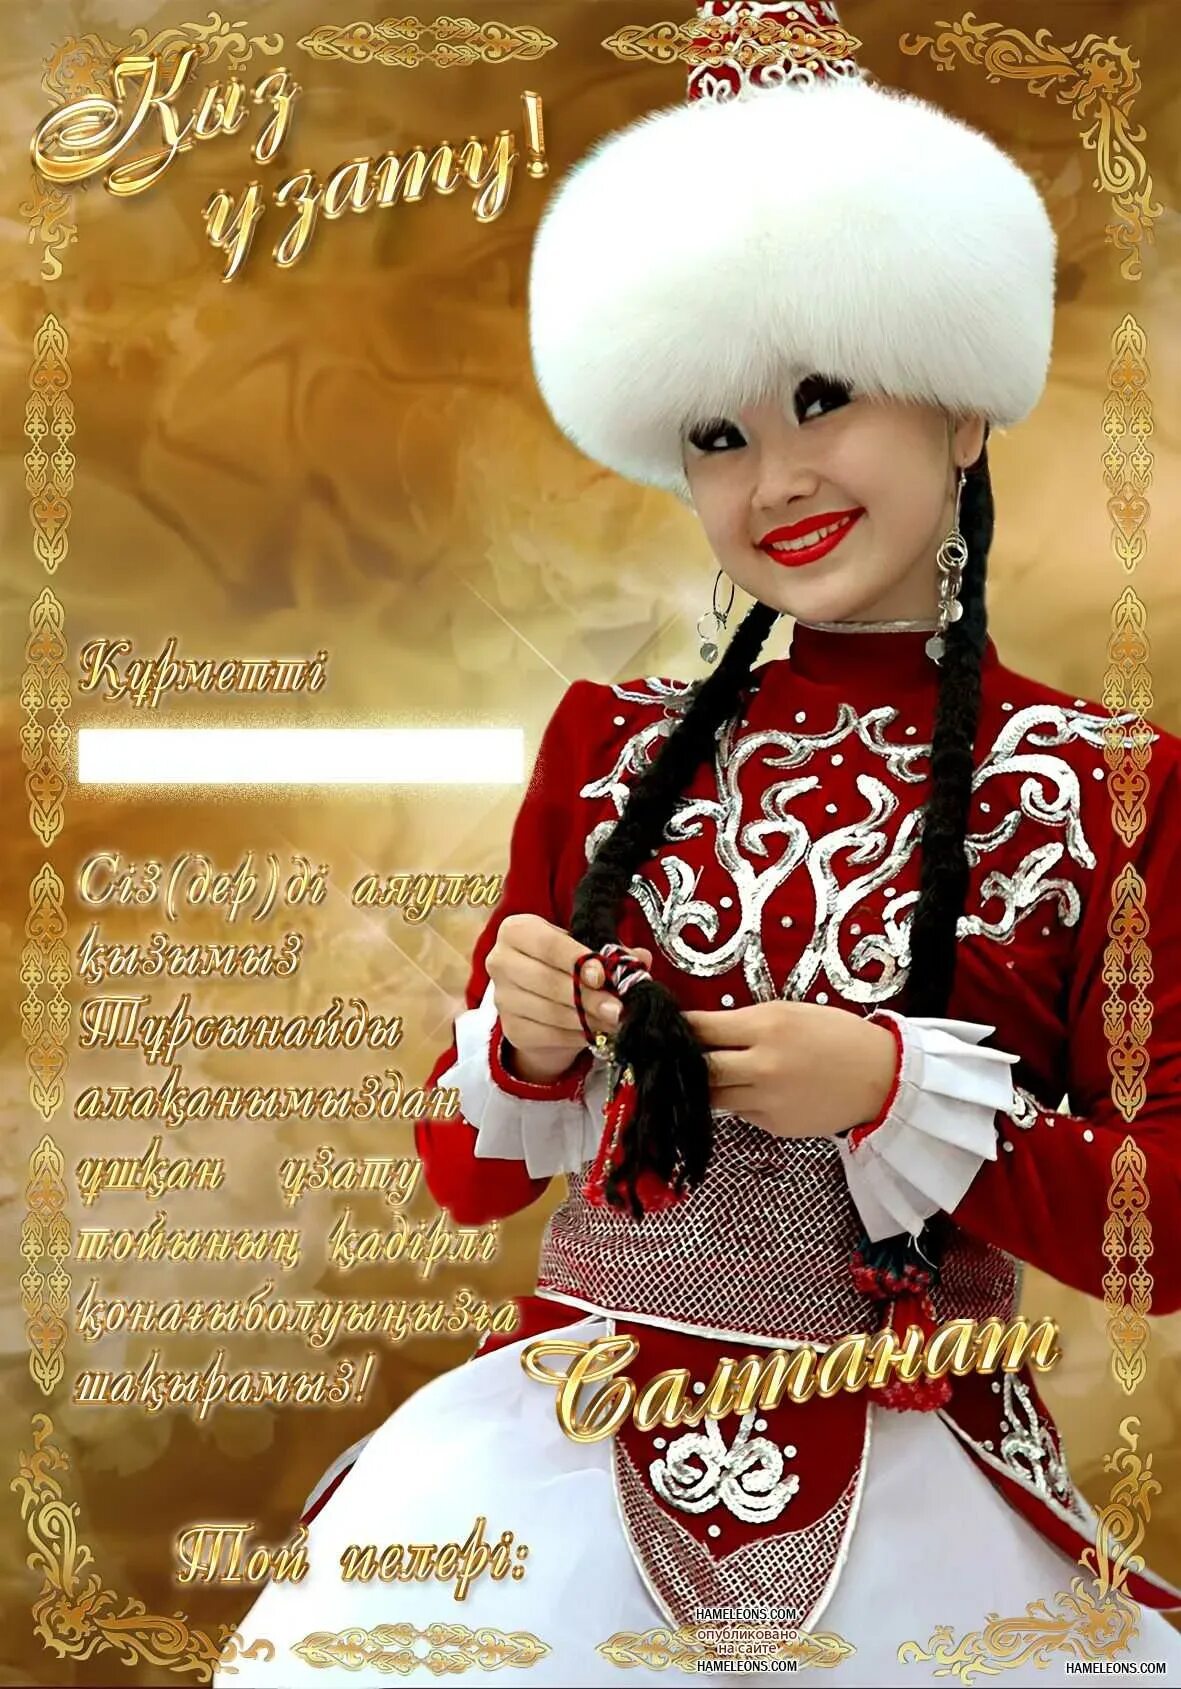 Поздравление казаха с днем рождения. Казахские открытки с днем рождения. Открытки с юбилеем на казахском языке. Казах поздравляет с днем рождения.